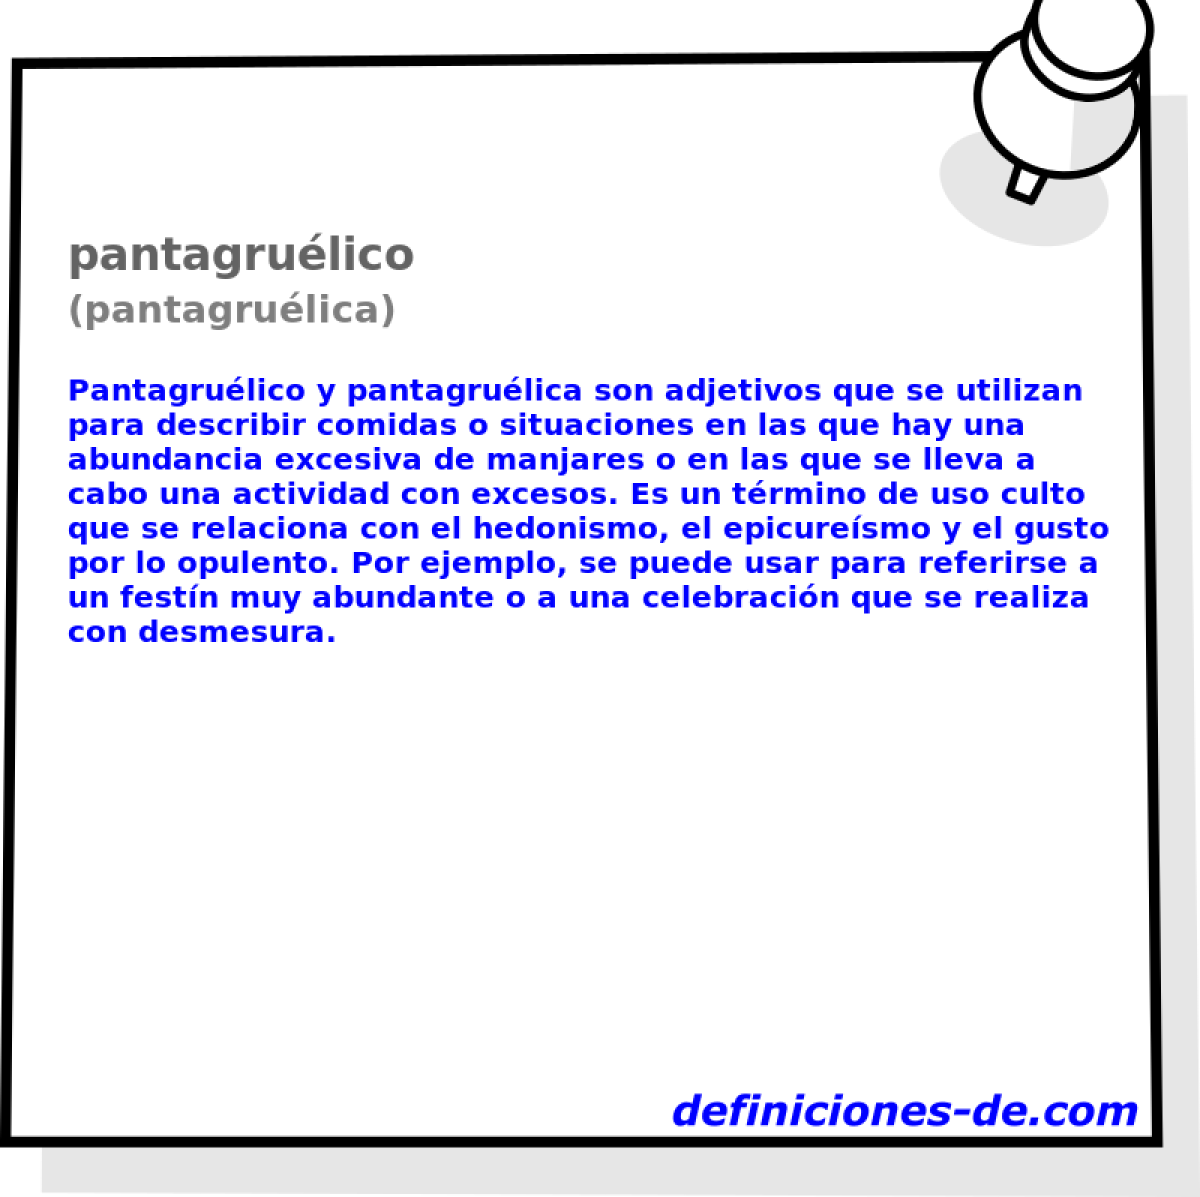 pantagrulico (pantagrulica)